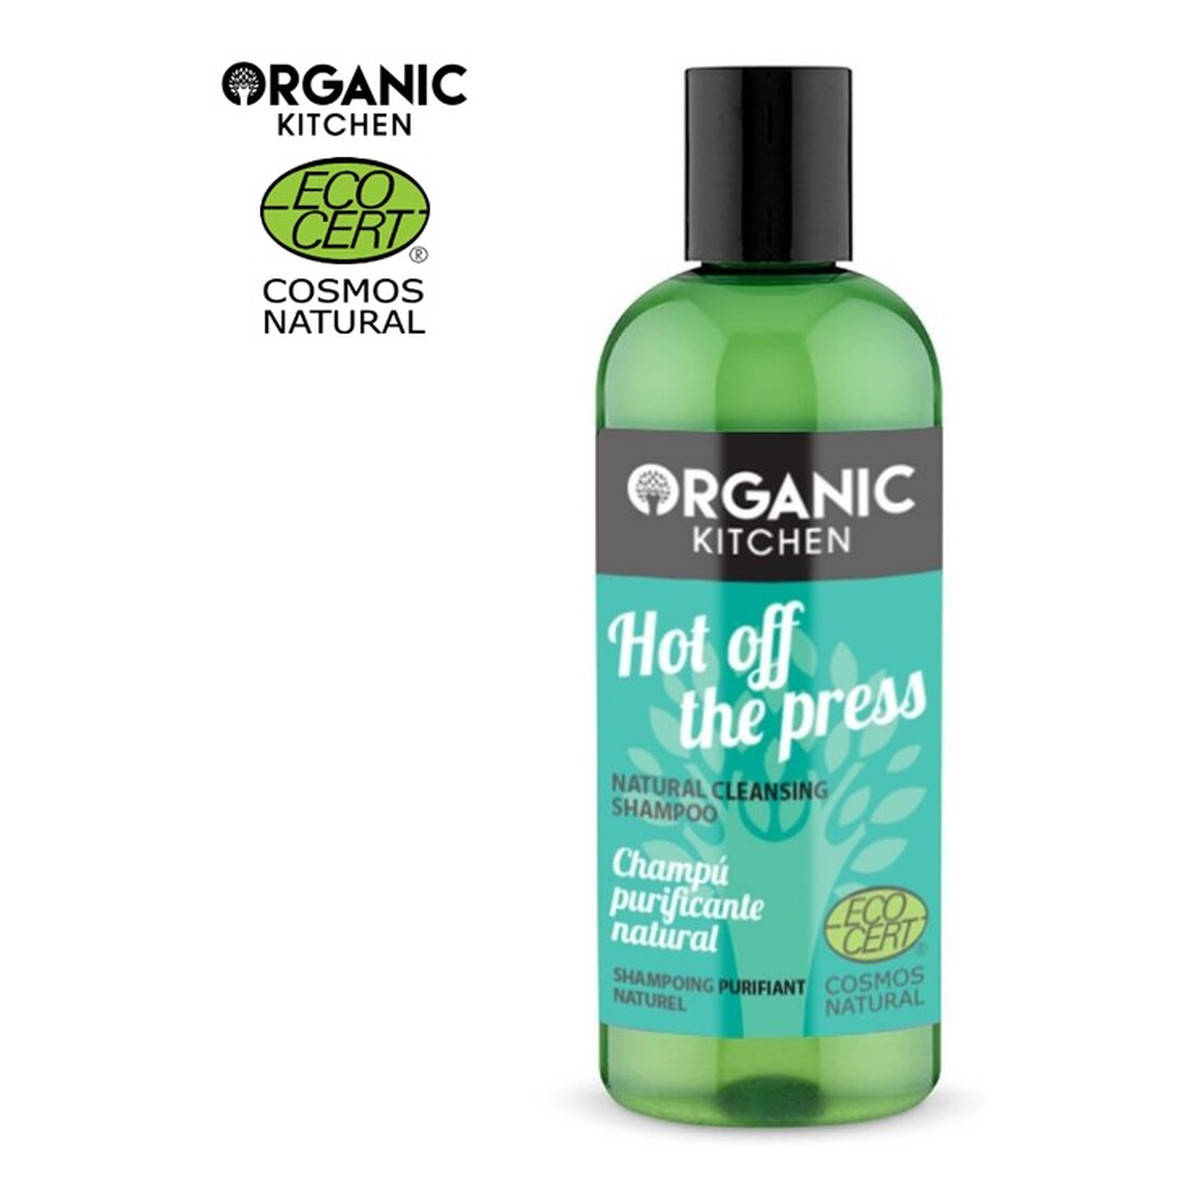 Organic Kitchen Gorąco z prasy Naturalny oczyszczający szampon do włosów 260ml